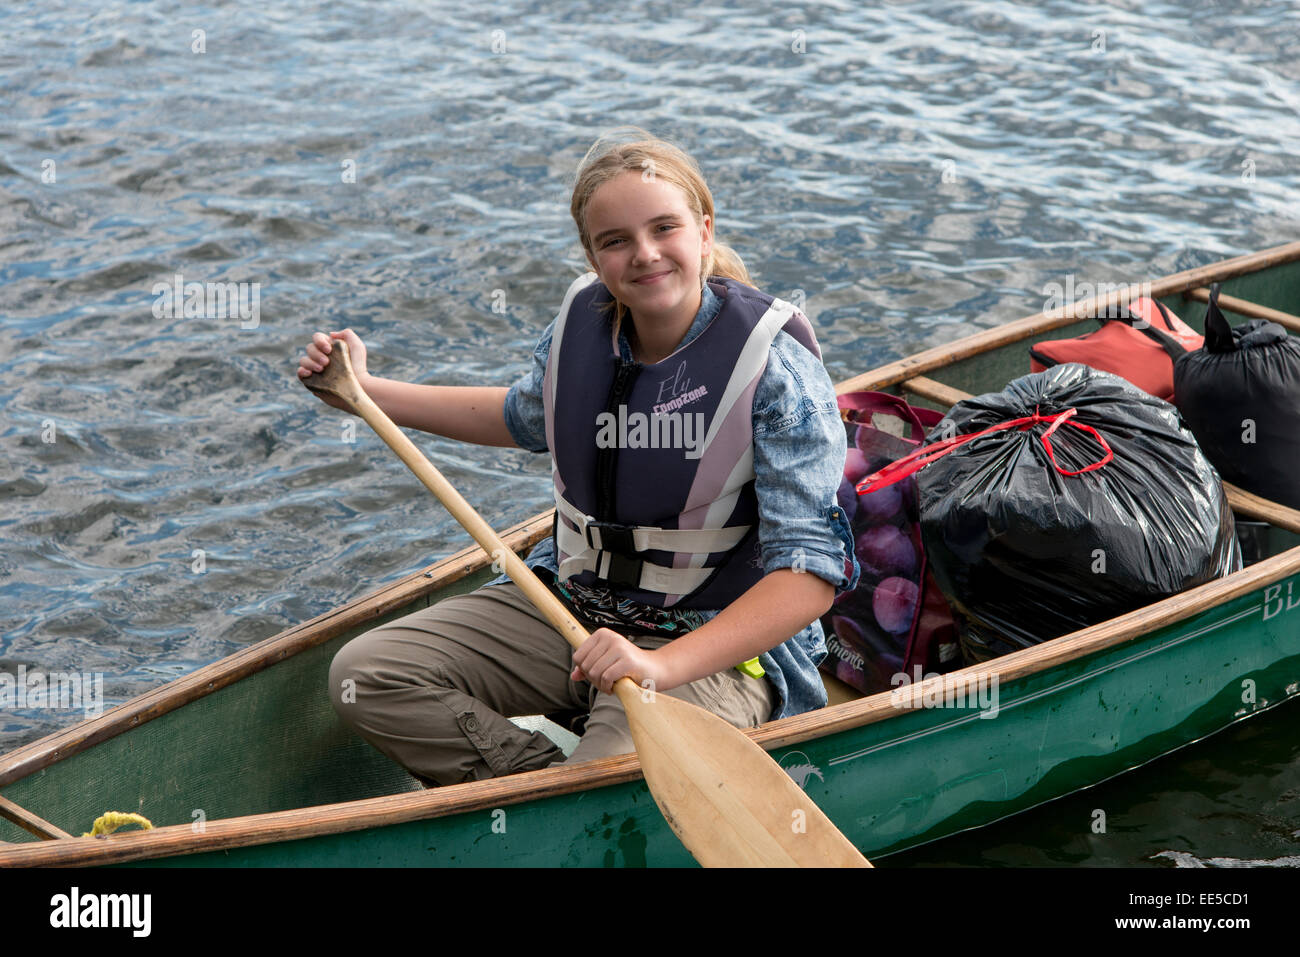 Ragazza remare una barca in un lago, il lago dei boschi, Ontario, Canada Foto Stock